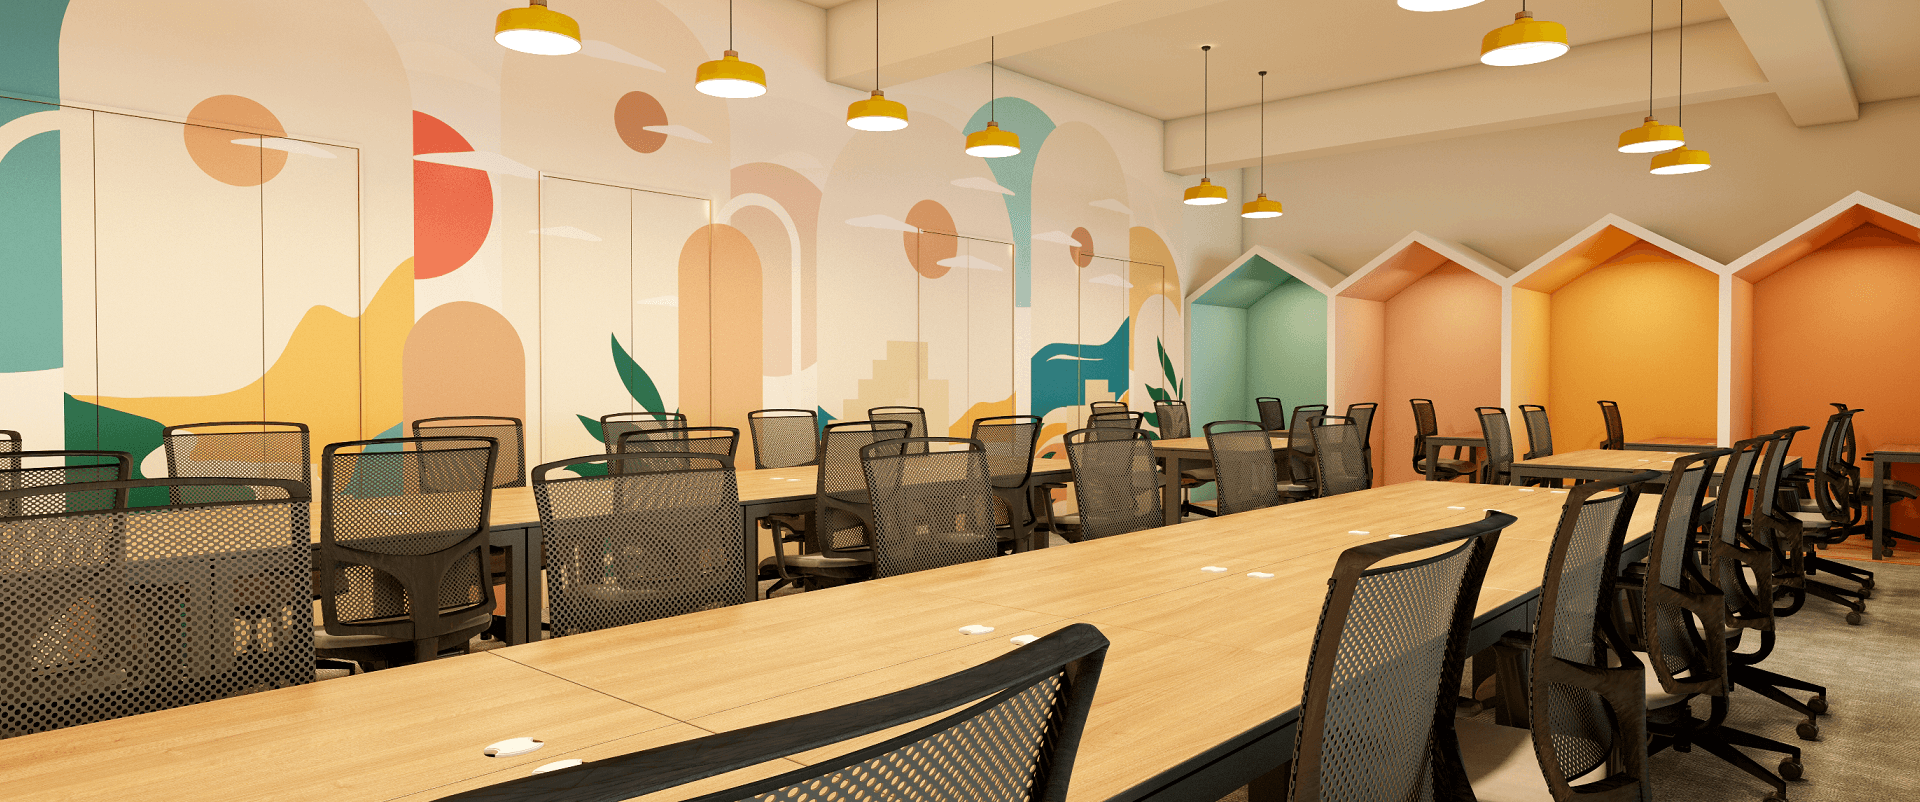 Best 5 Commercial Office Interior Designers in Rajkot - DevX